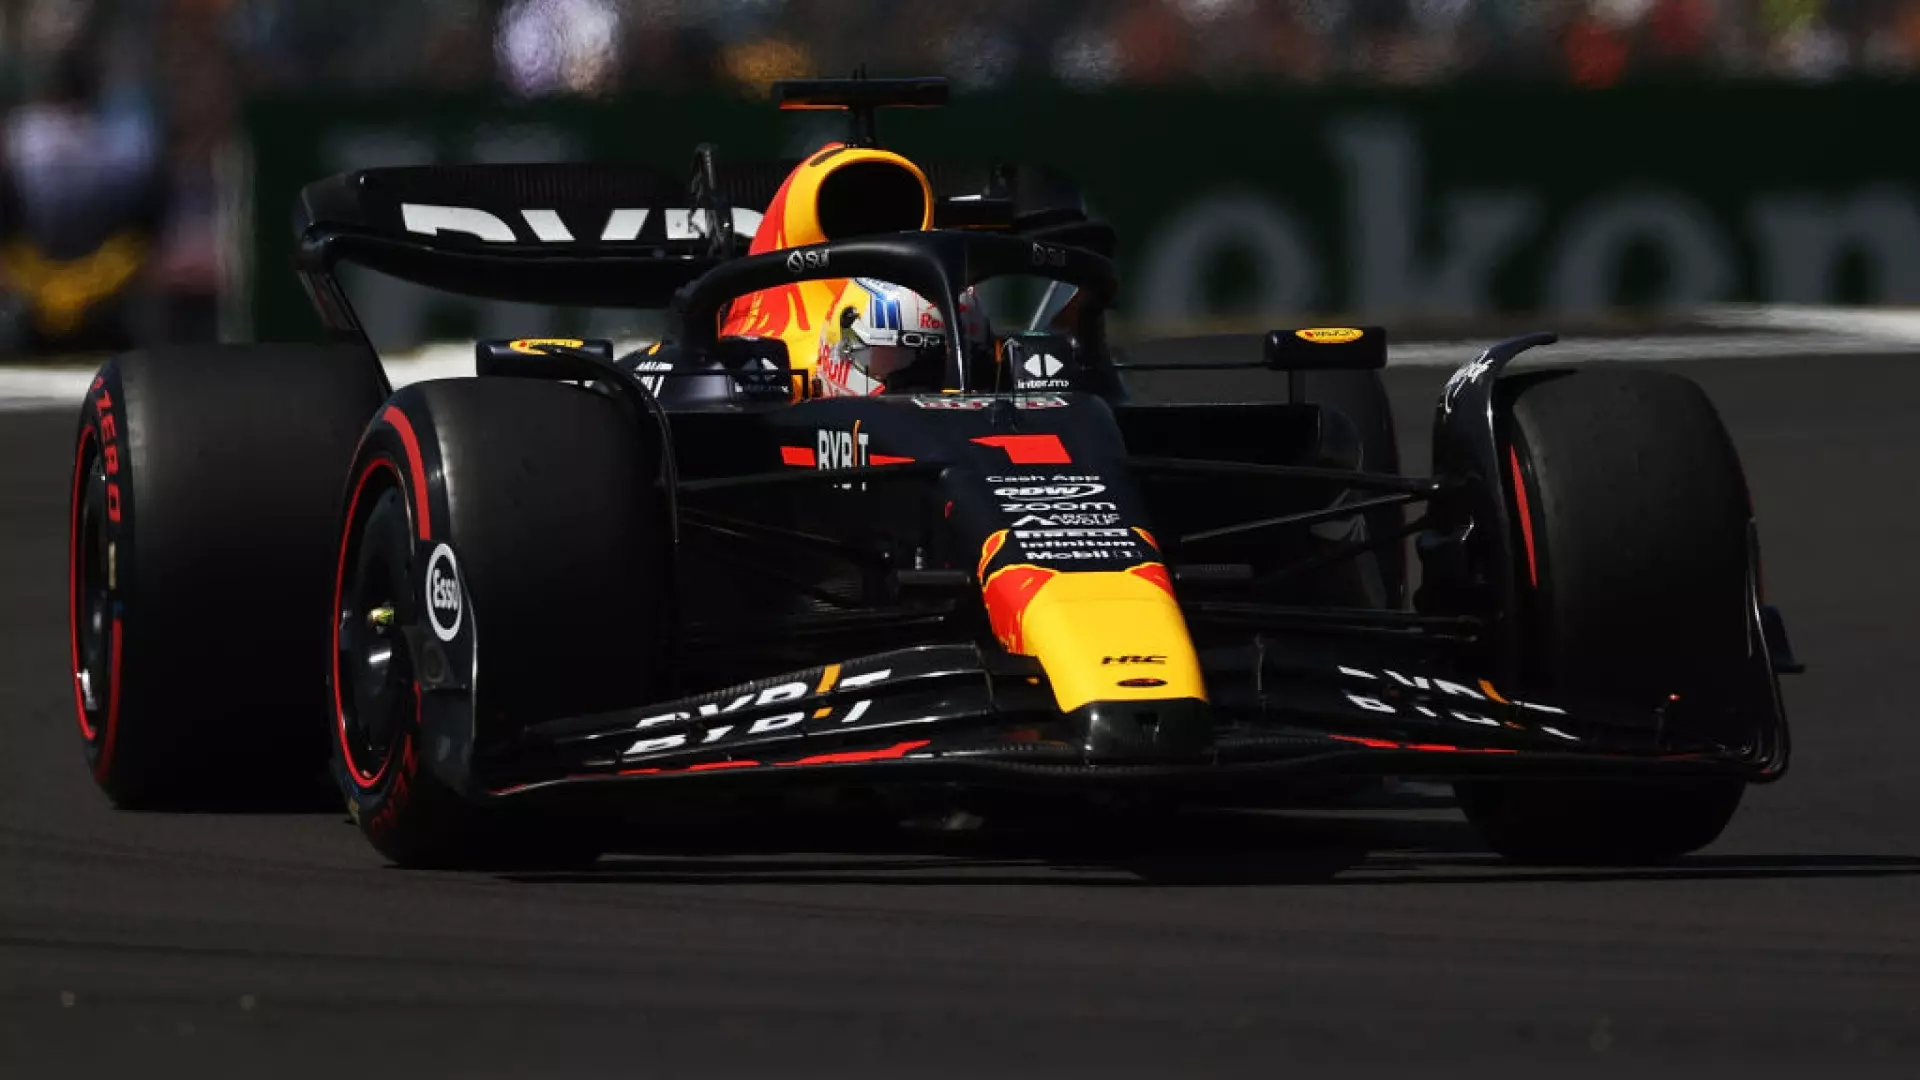 F1, Gp Silverstone: Max Verstappen si prende anche le FP2, problemi per Charles Leclerc